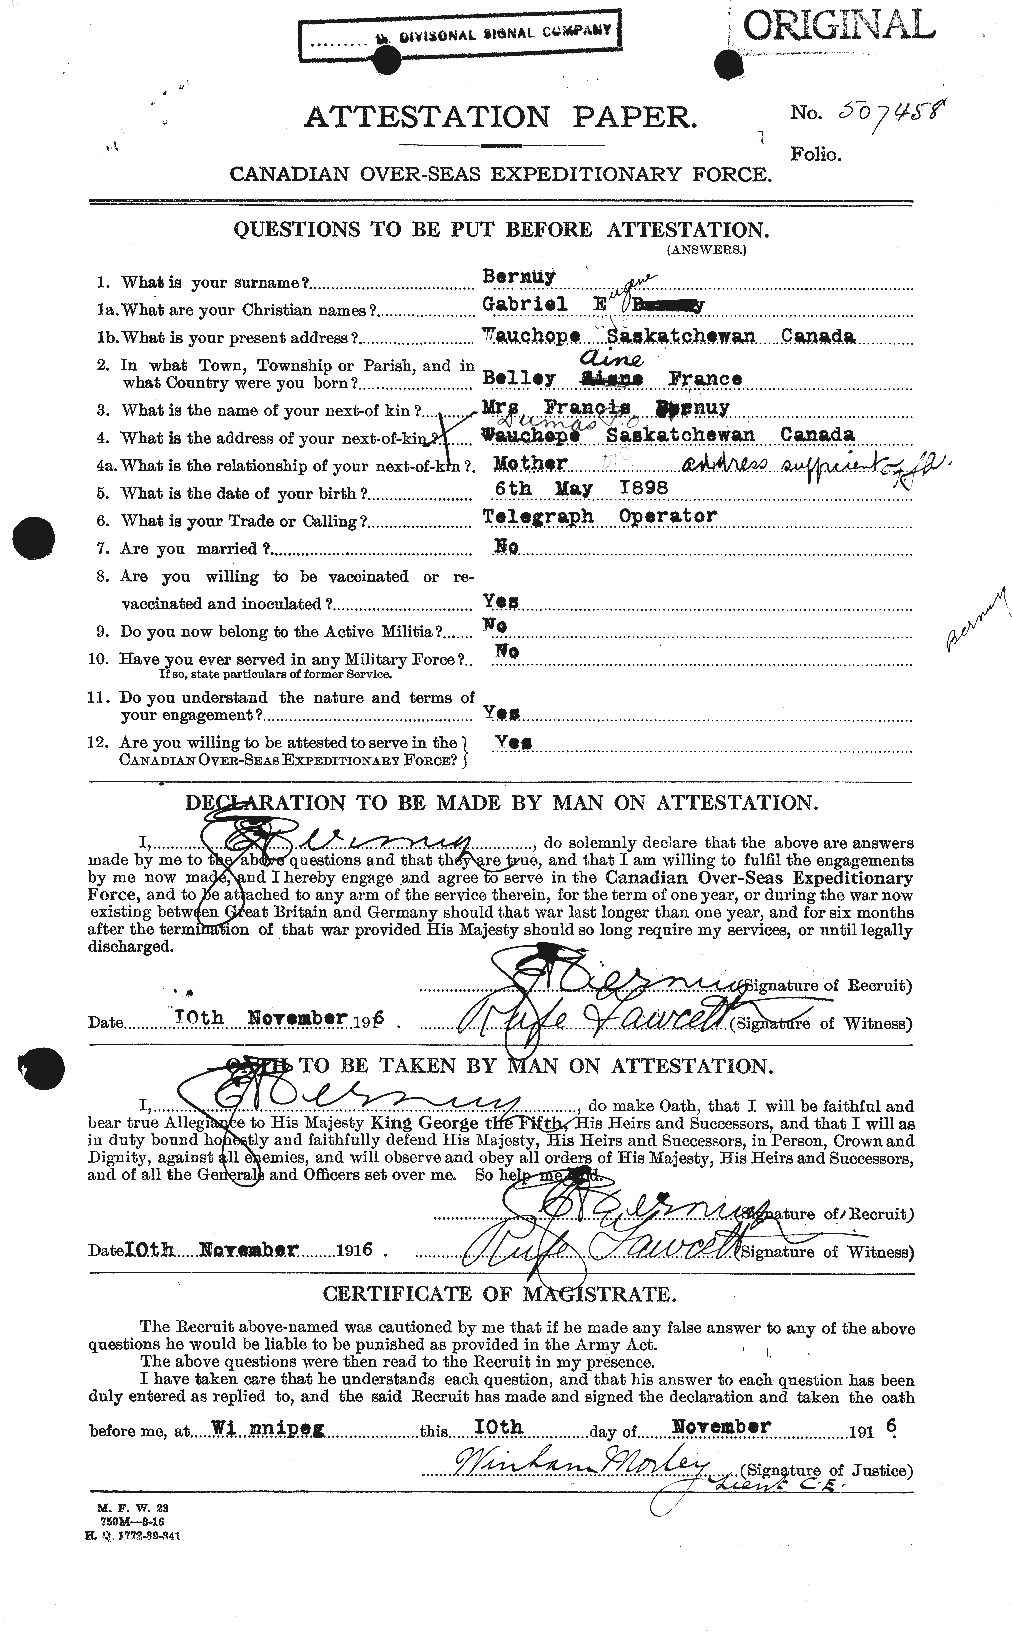 Dossiers du Personnel de la Première Guerre mondiale - CEC 239816a